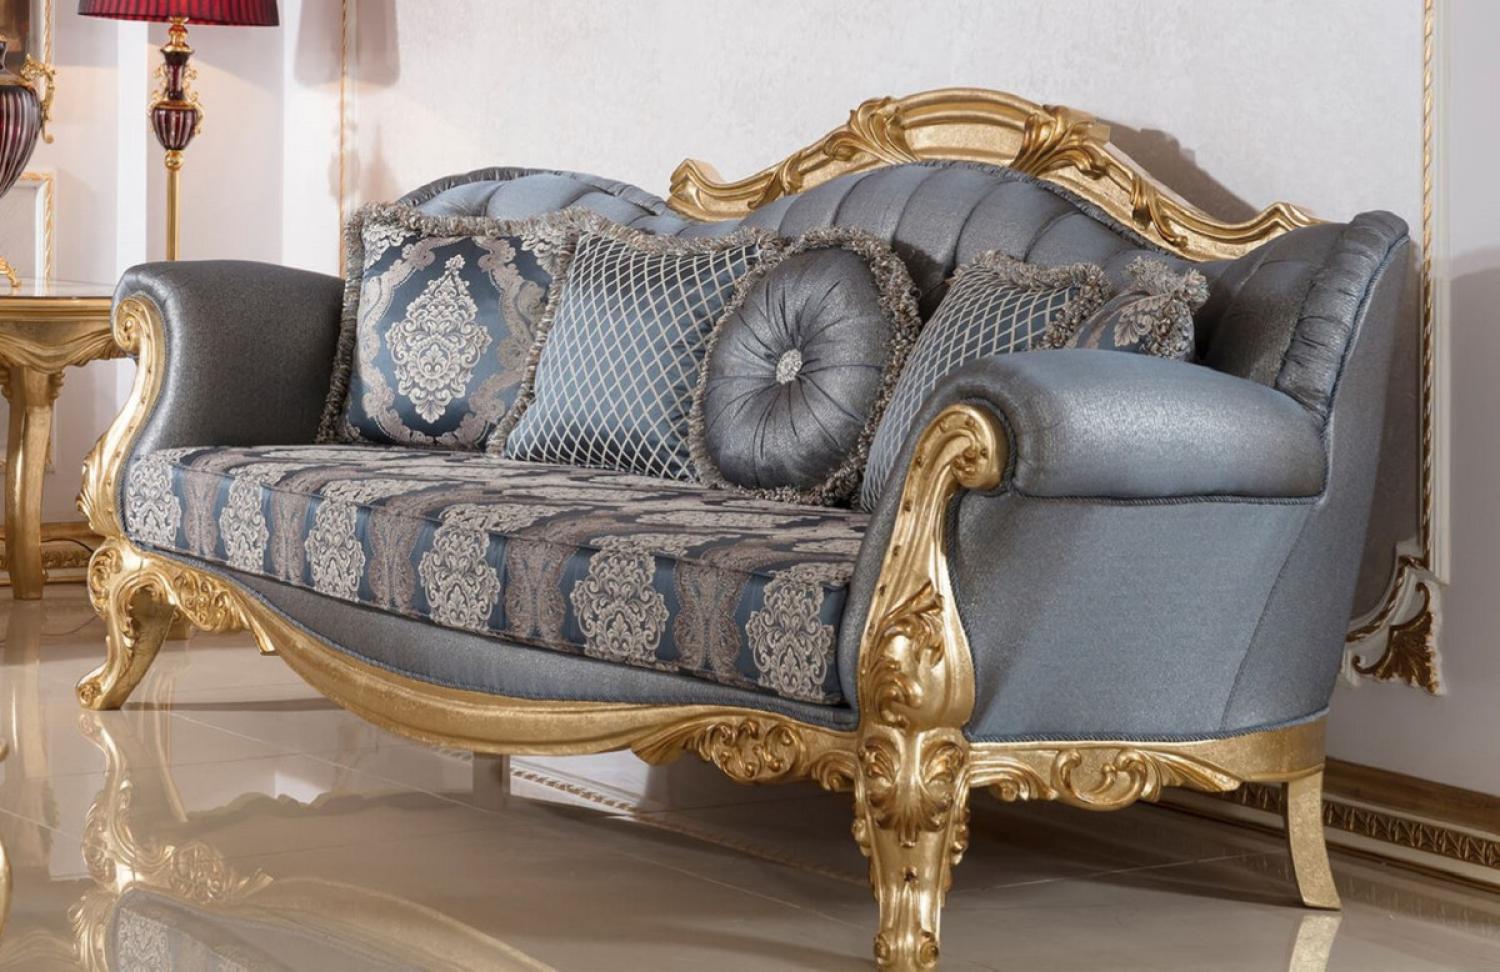 Casa Padrino Luxus Barock Sofa Blau / Gold - Handgefertigtes Barockstil Wohnzimmer Sofa mit elegantem Muster - Barock Wohnzimmer Möbel - Edel & Prunkvoll Bild 1